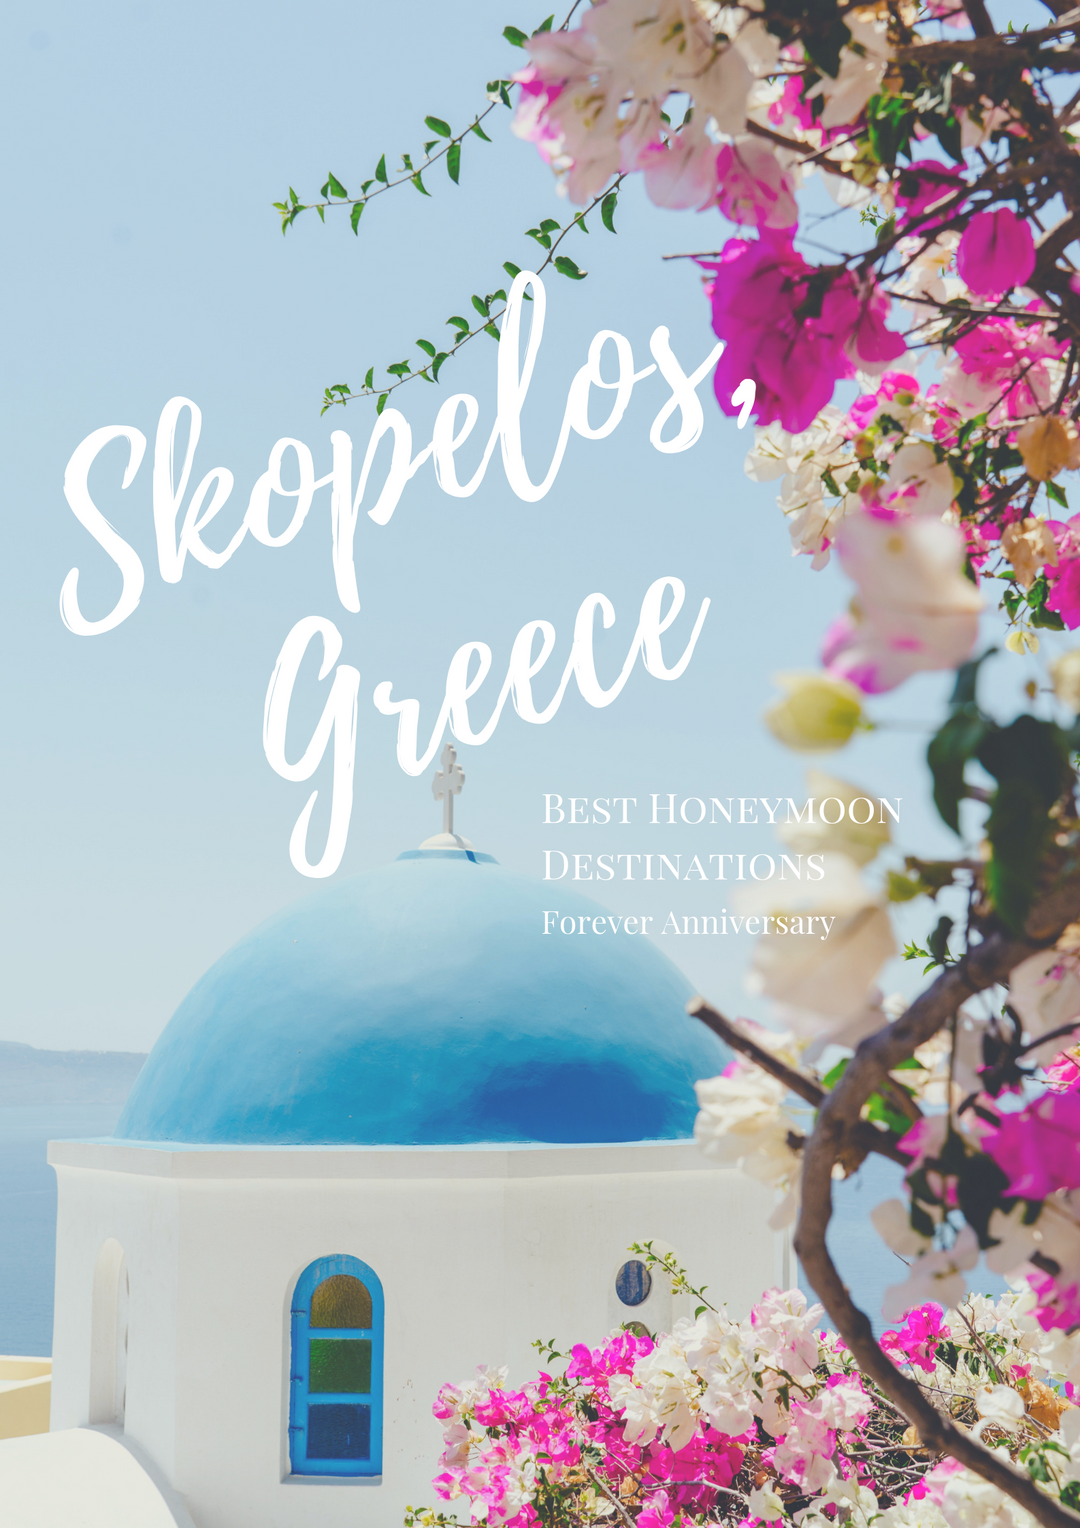 Best Honeymoon Destinations (Skopelos, Greece)